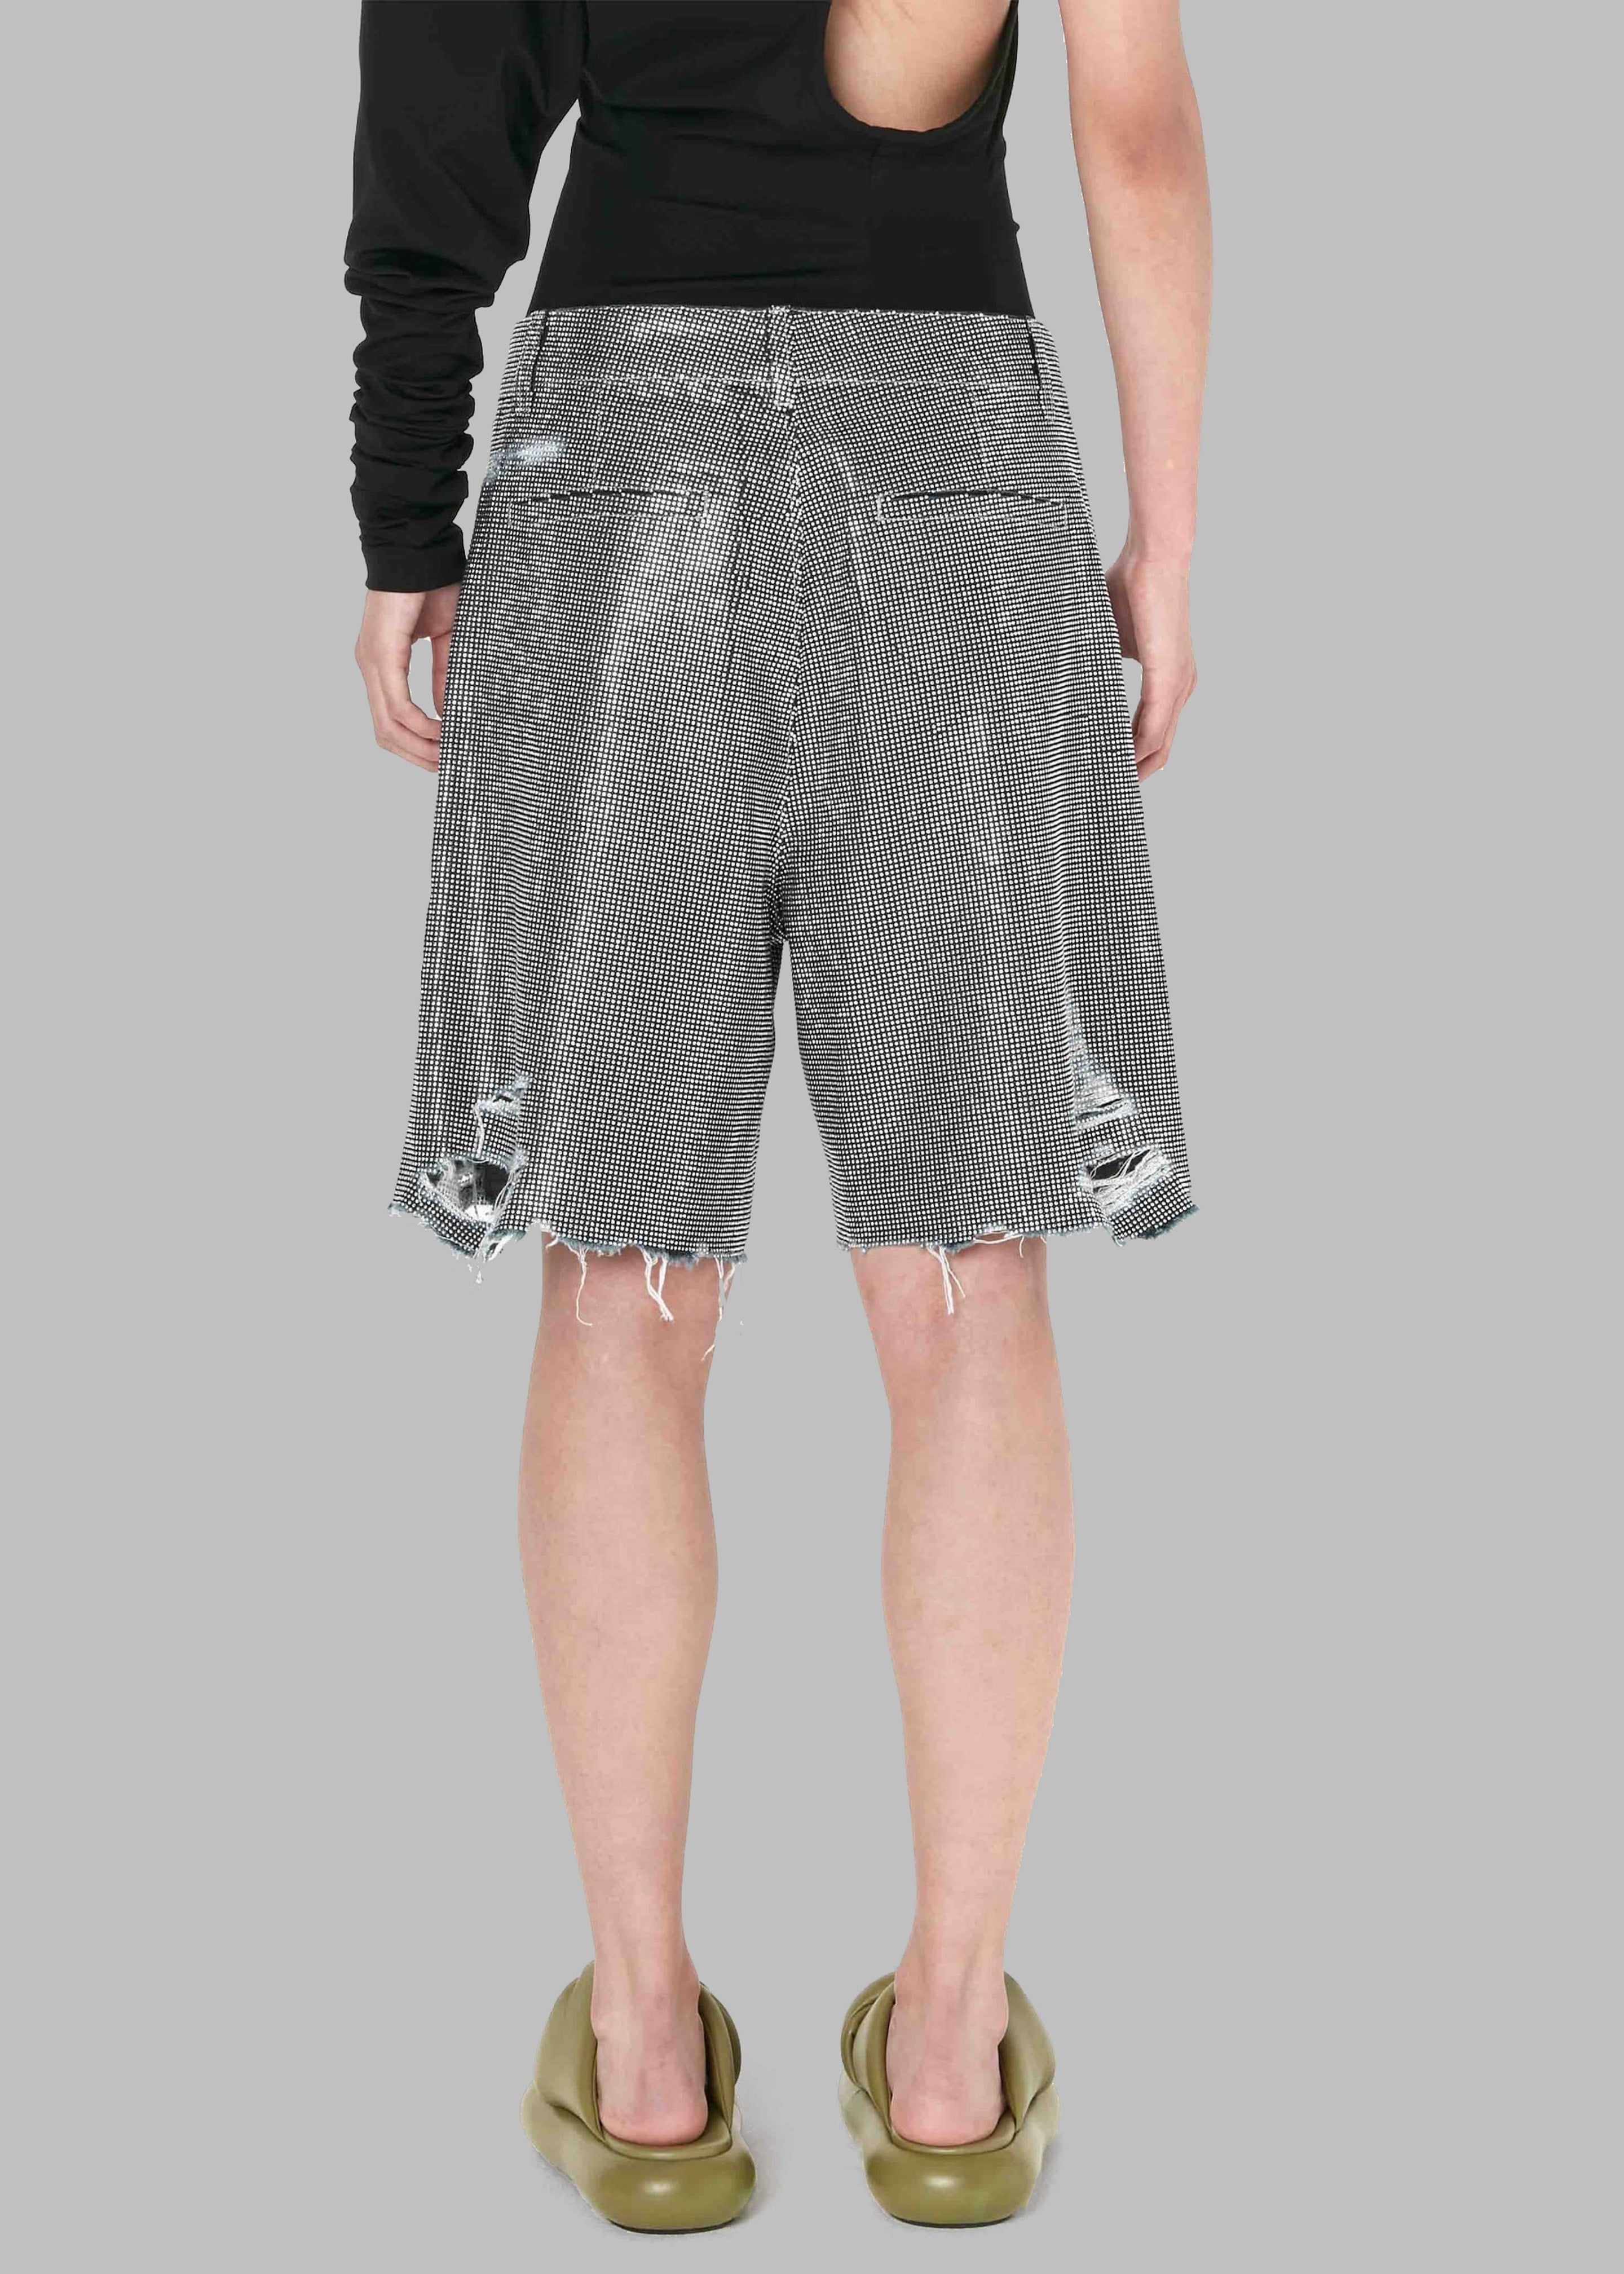 JW Anderson Studded Workwear Shorts - Indigo/Silver - 11